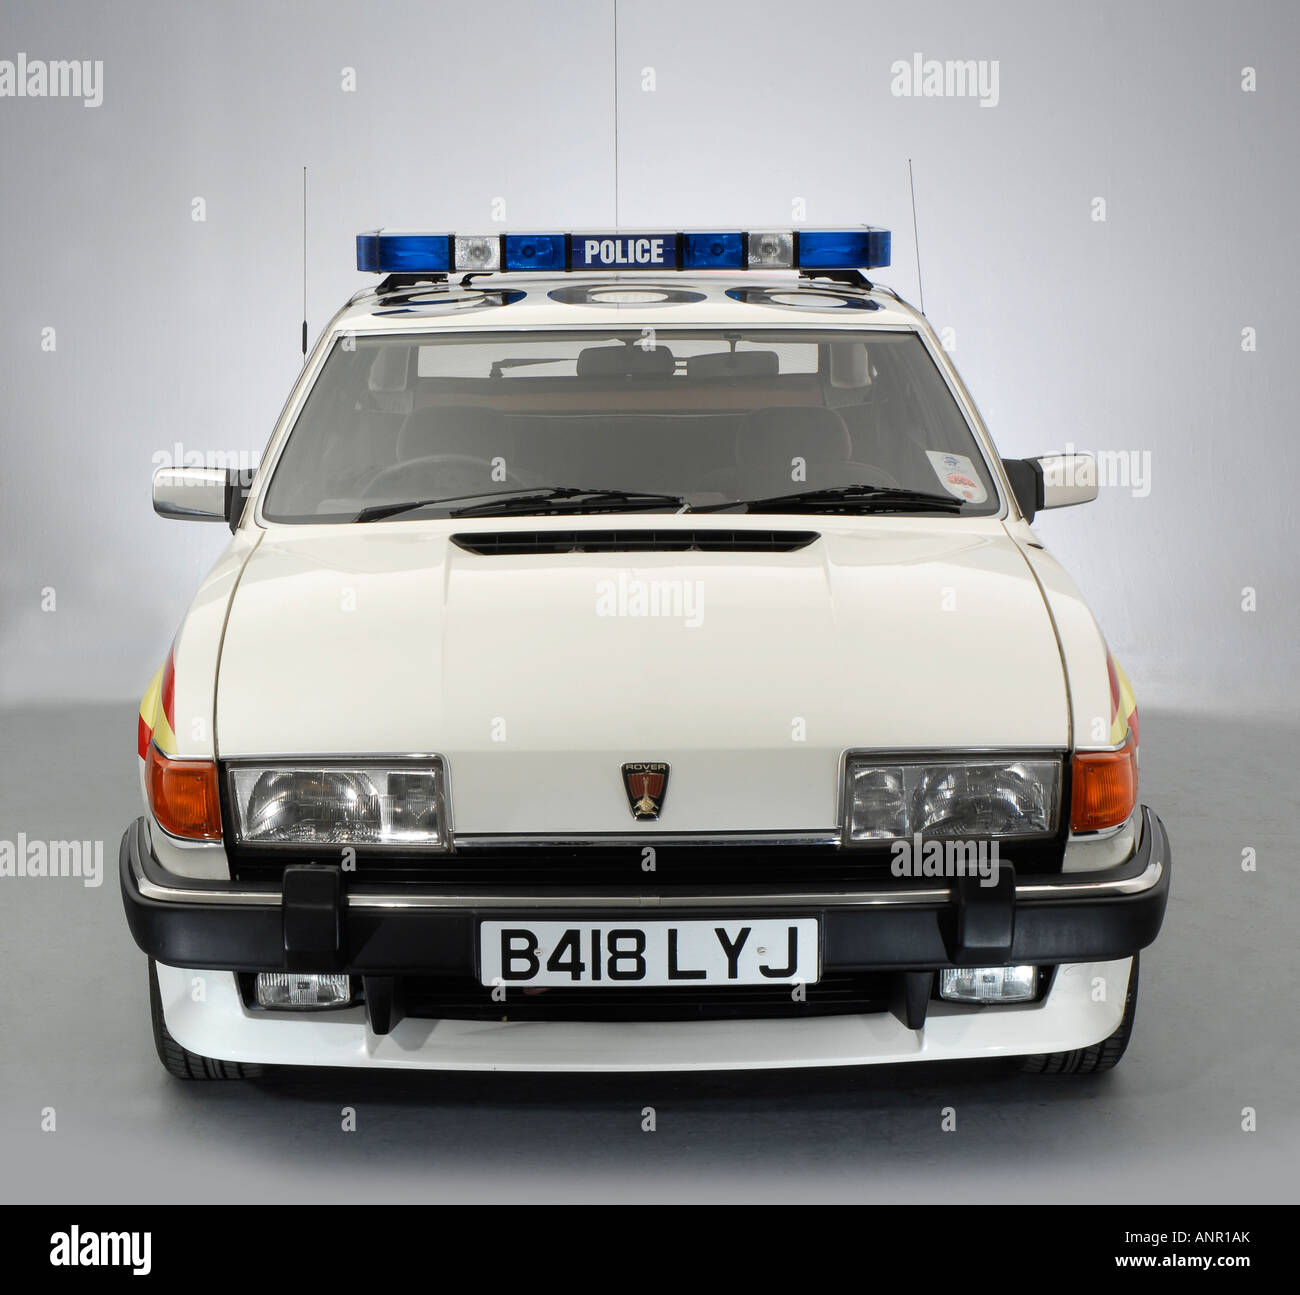 1984 Rover SD1 Police Car Stock Photo - Alamy